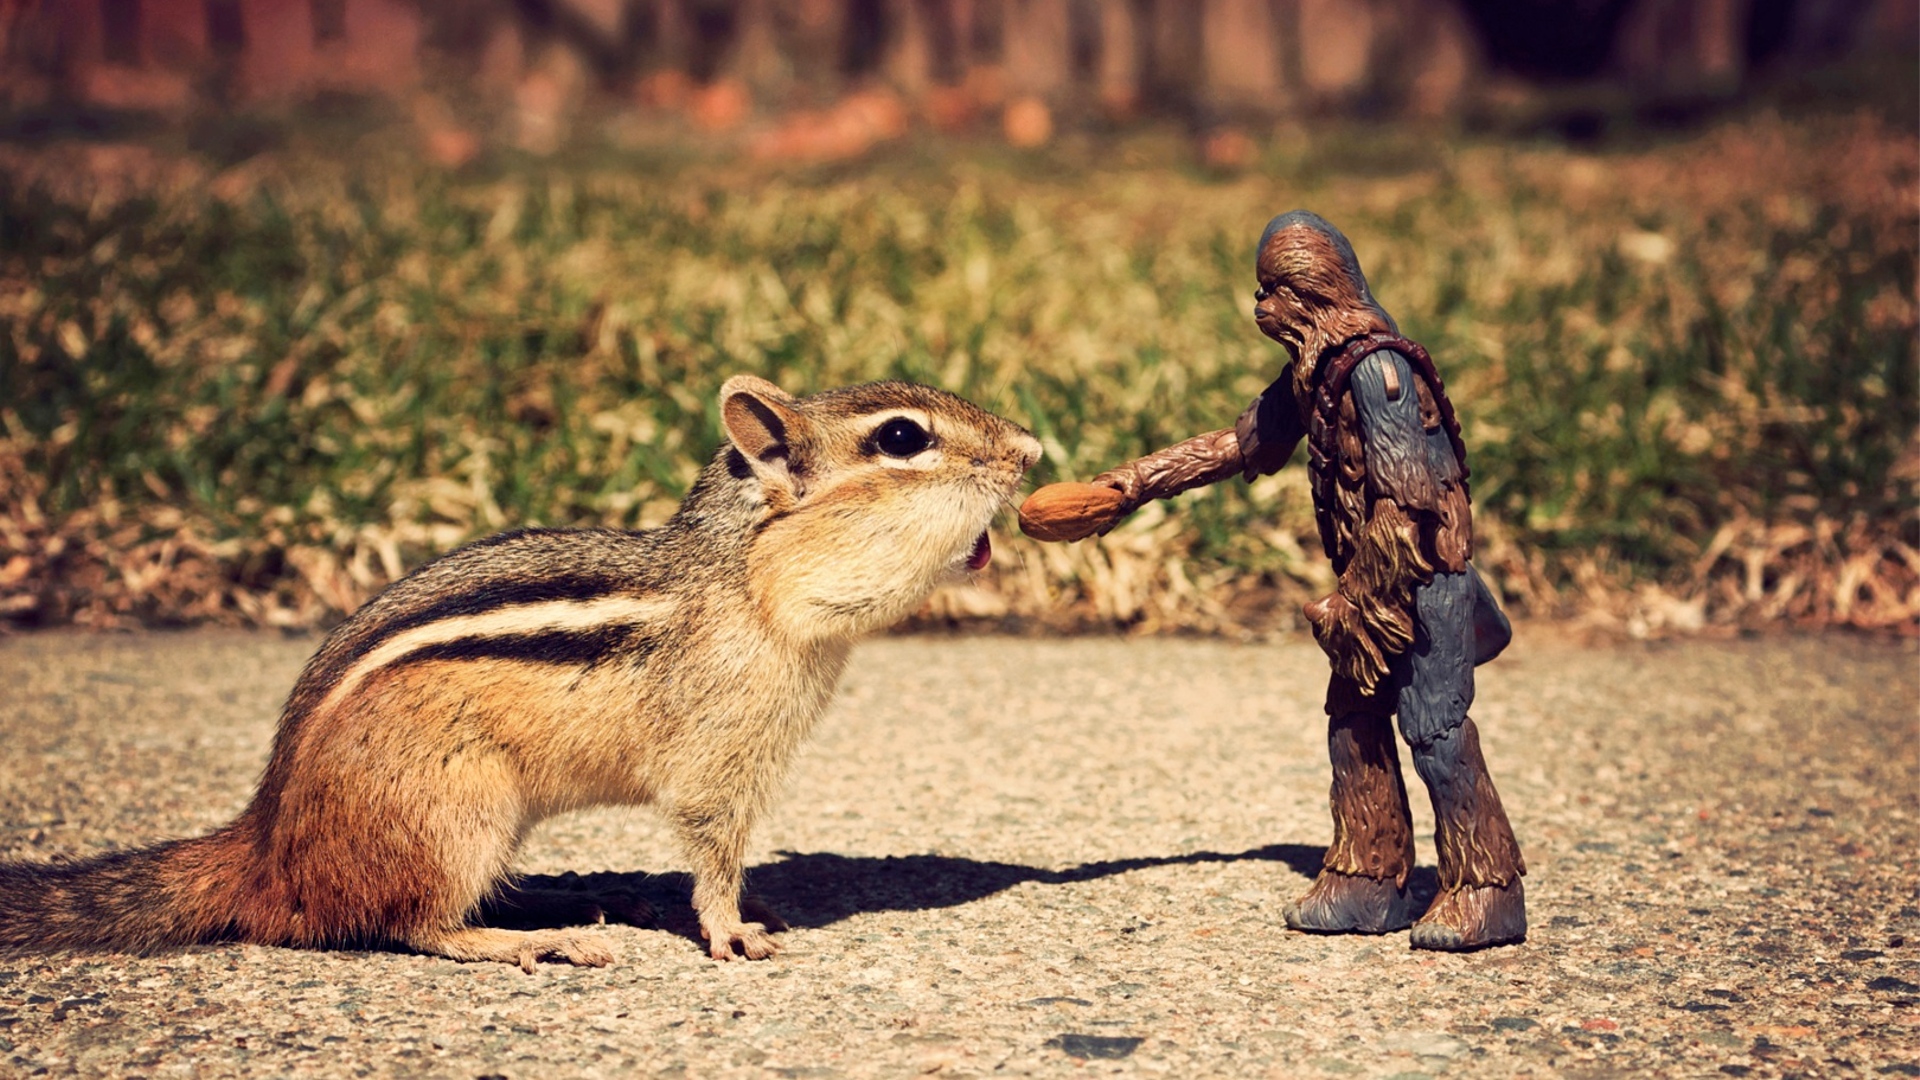 Wookie Star Wars Squirrel Nut Chewbacca Figurine 1920x1080